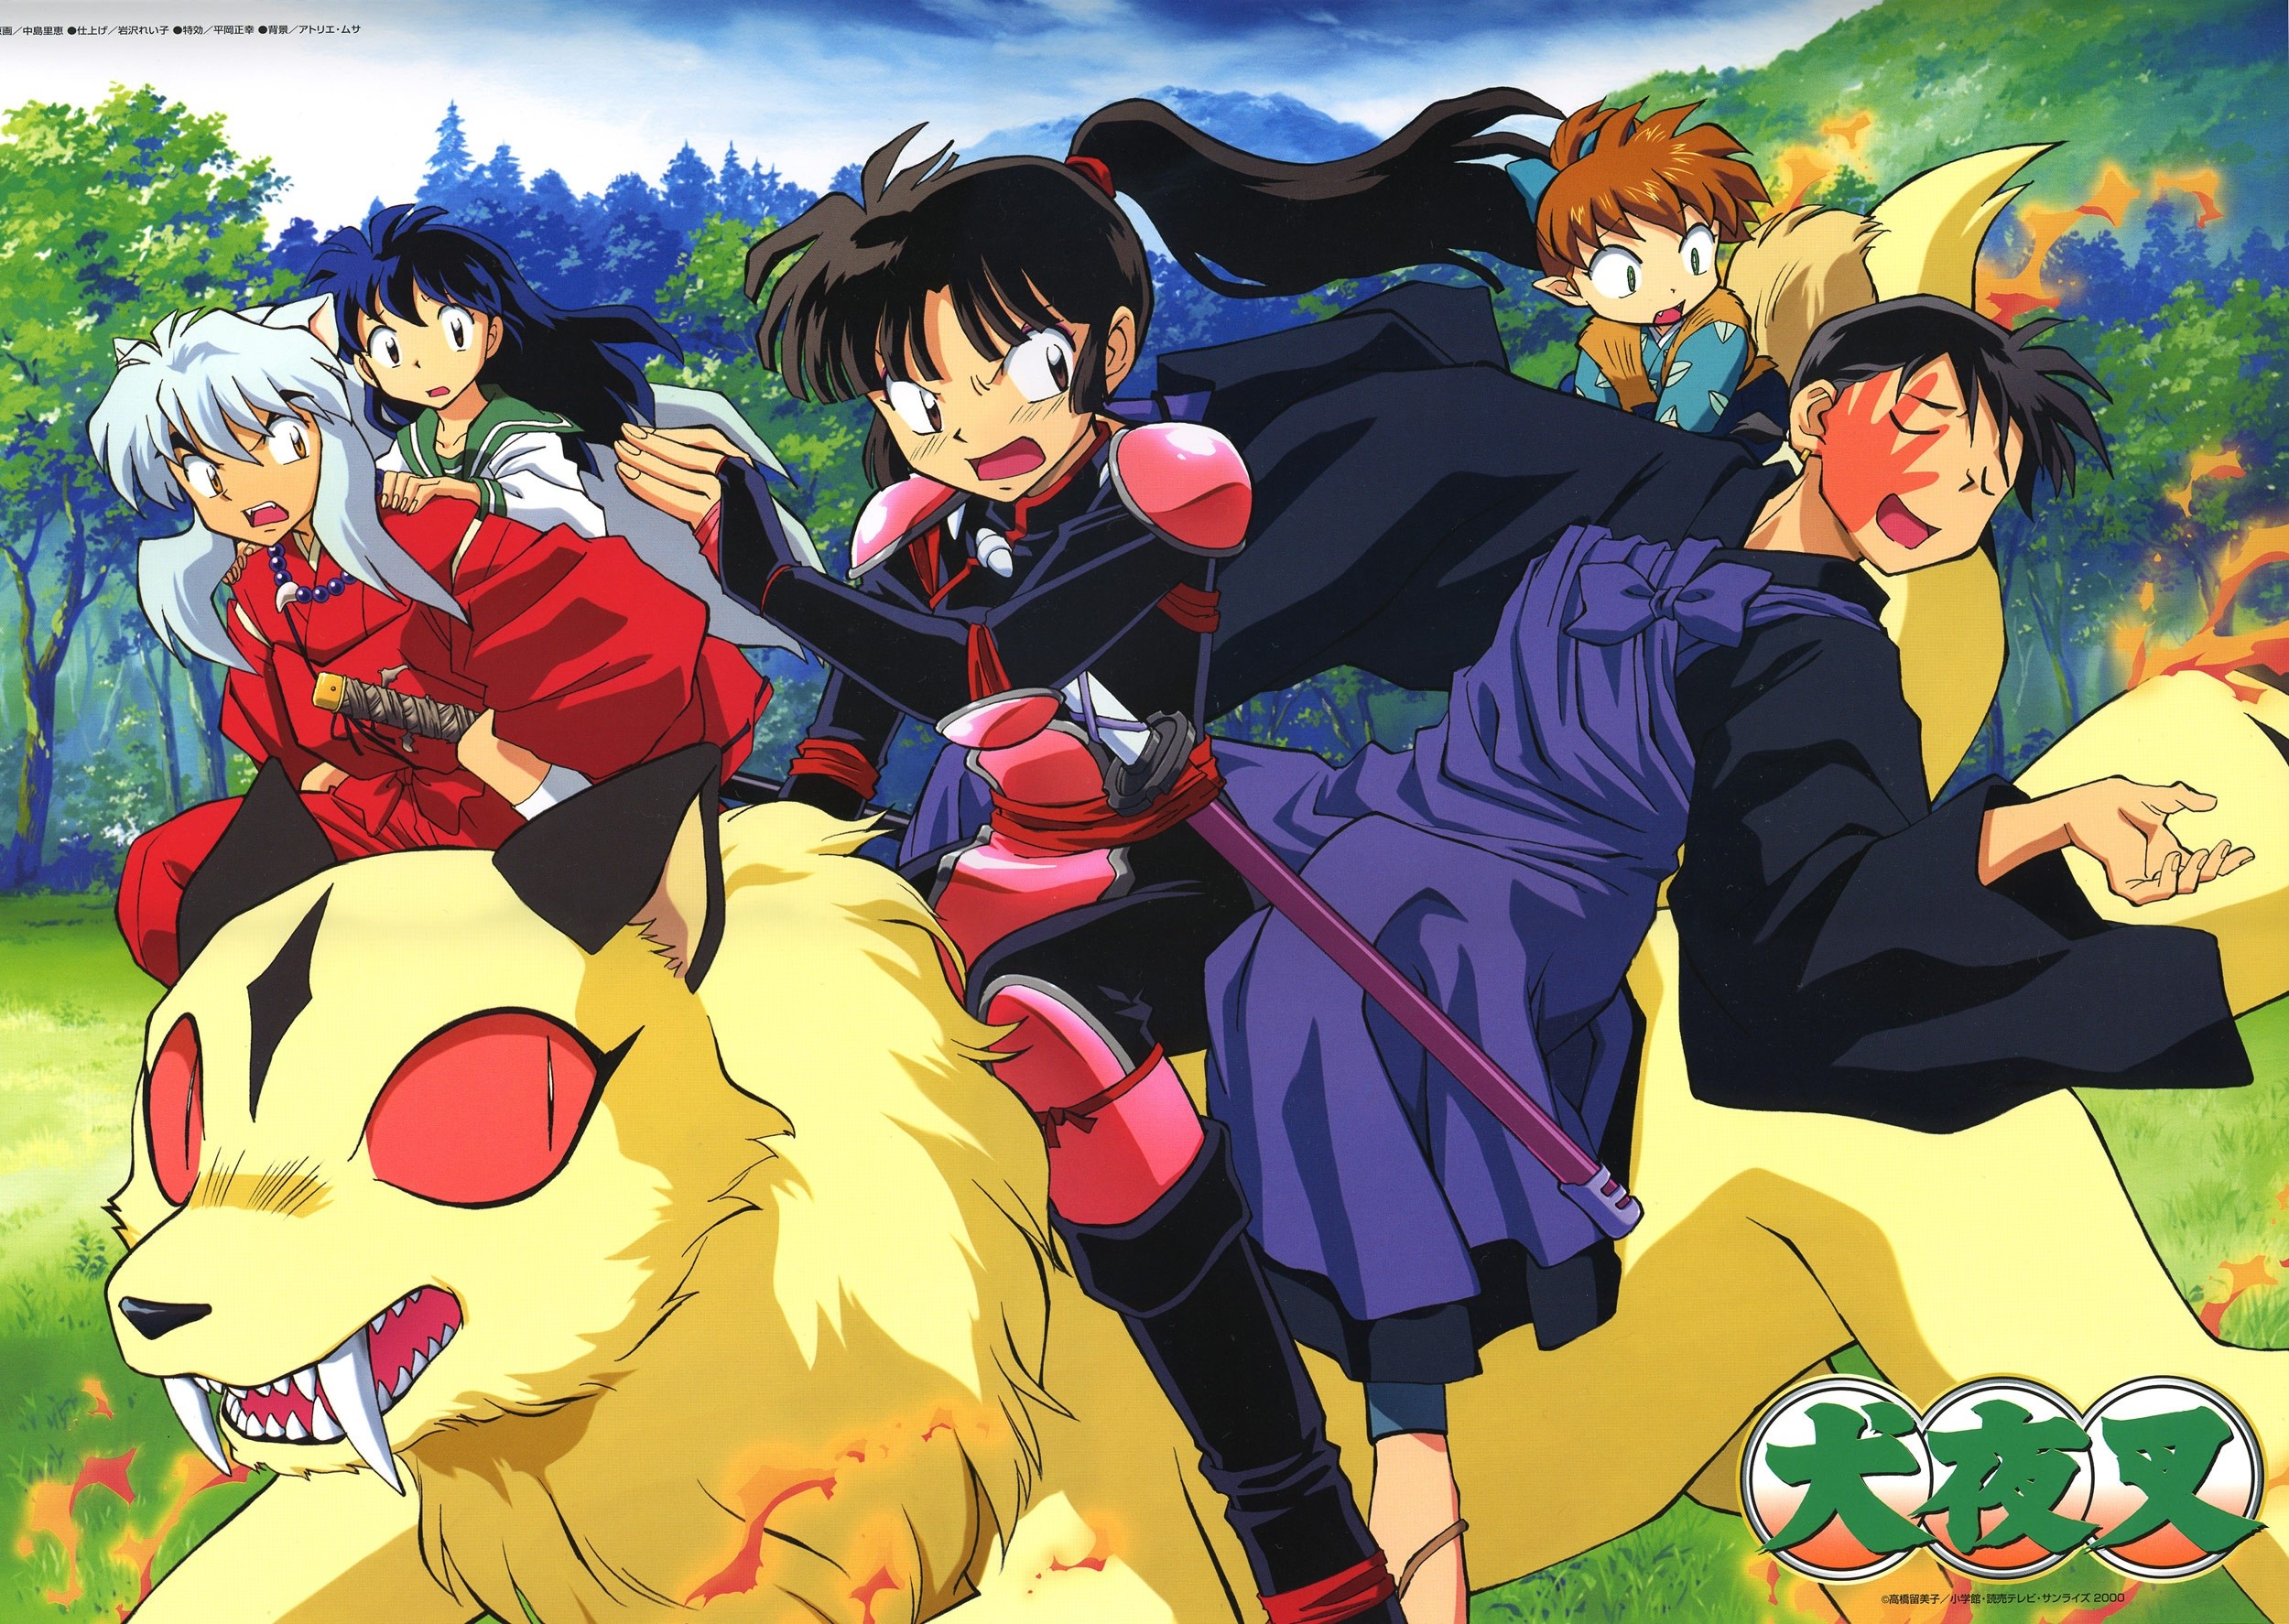 Anime cổ điển Inuyasha sẽ có bản HD Remaster 16: 9 - Kodoani - Kênh thông  tin anime - manga - game văn hóa Nhật Bản